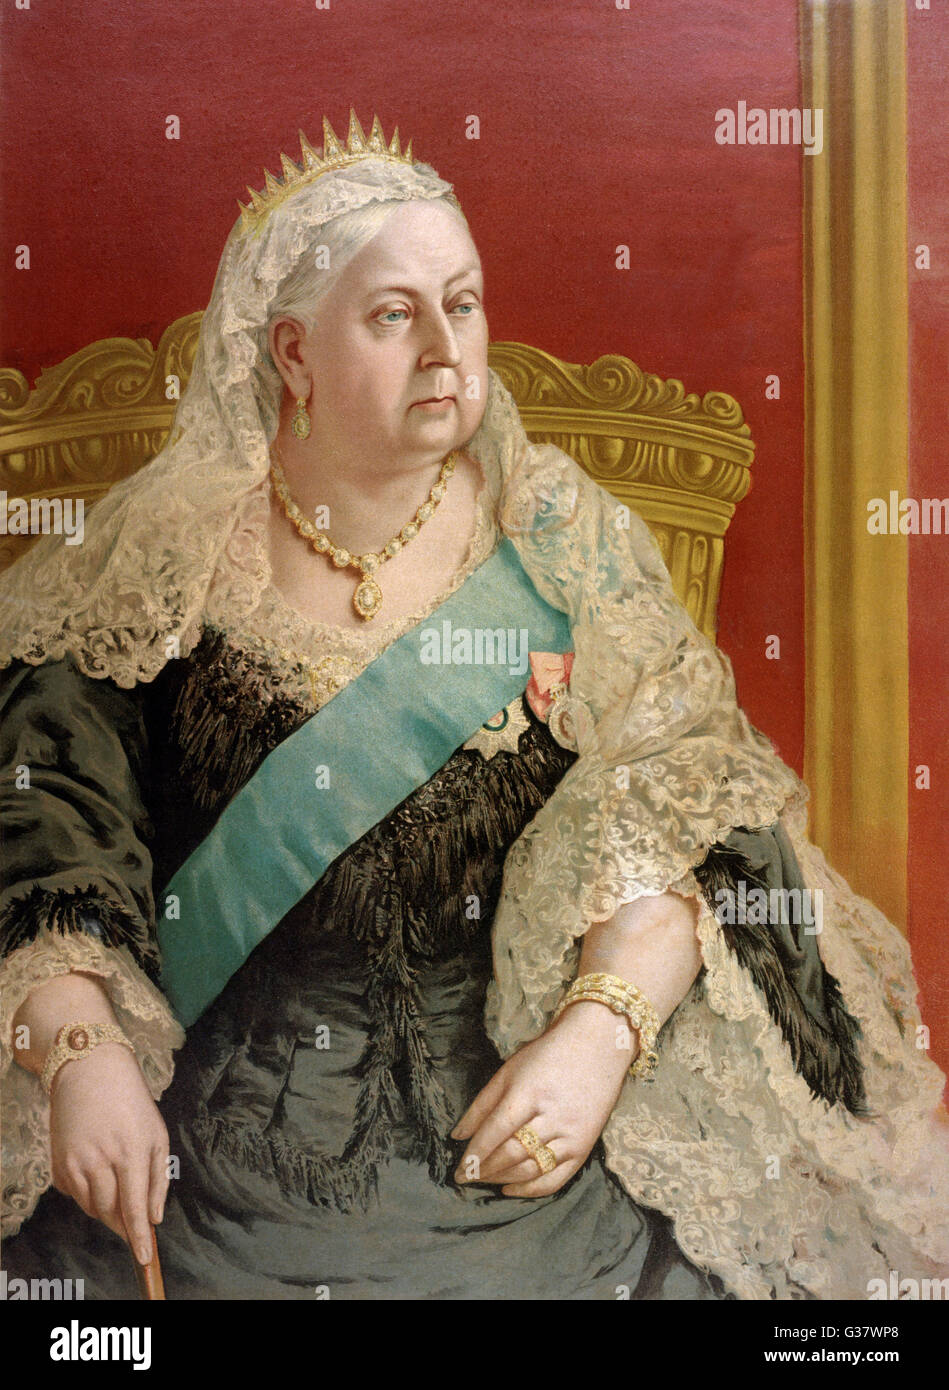 La reina Victoria Circa 1880. Fecha: 1819 - 1901 Foto de stock